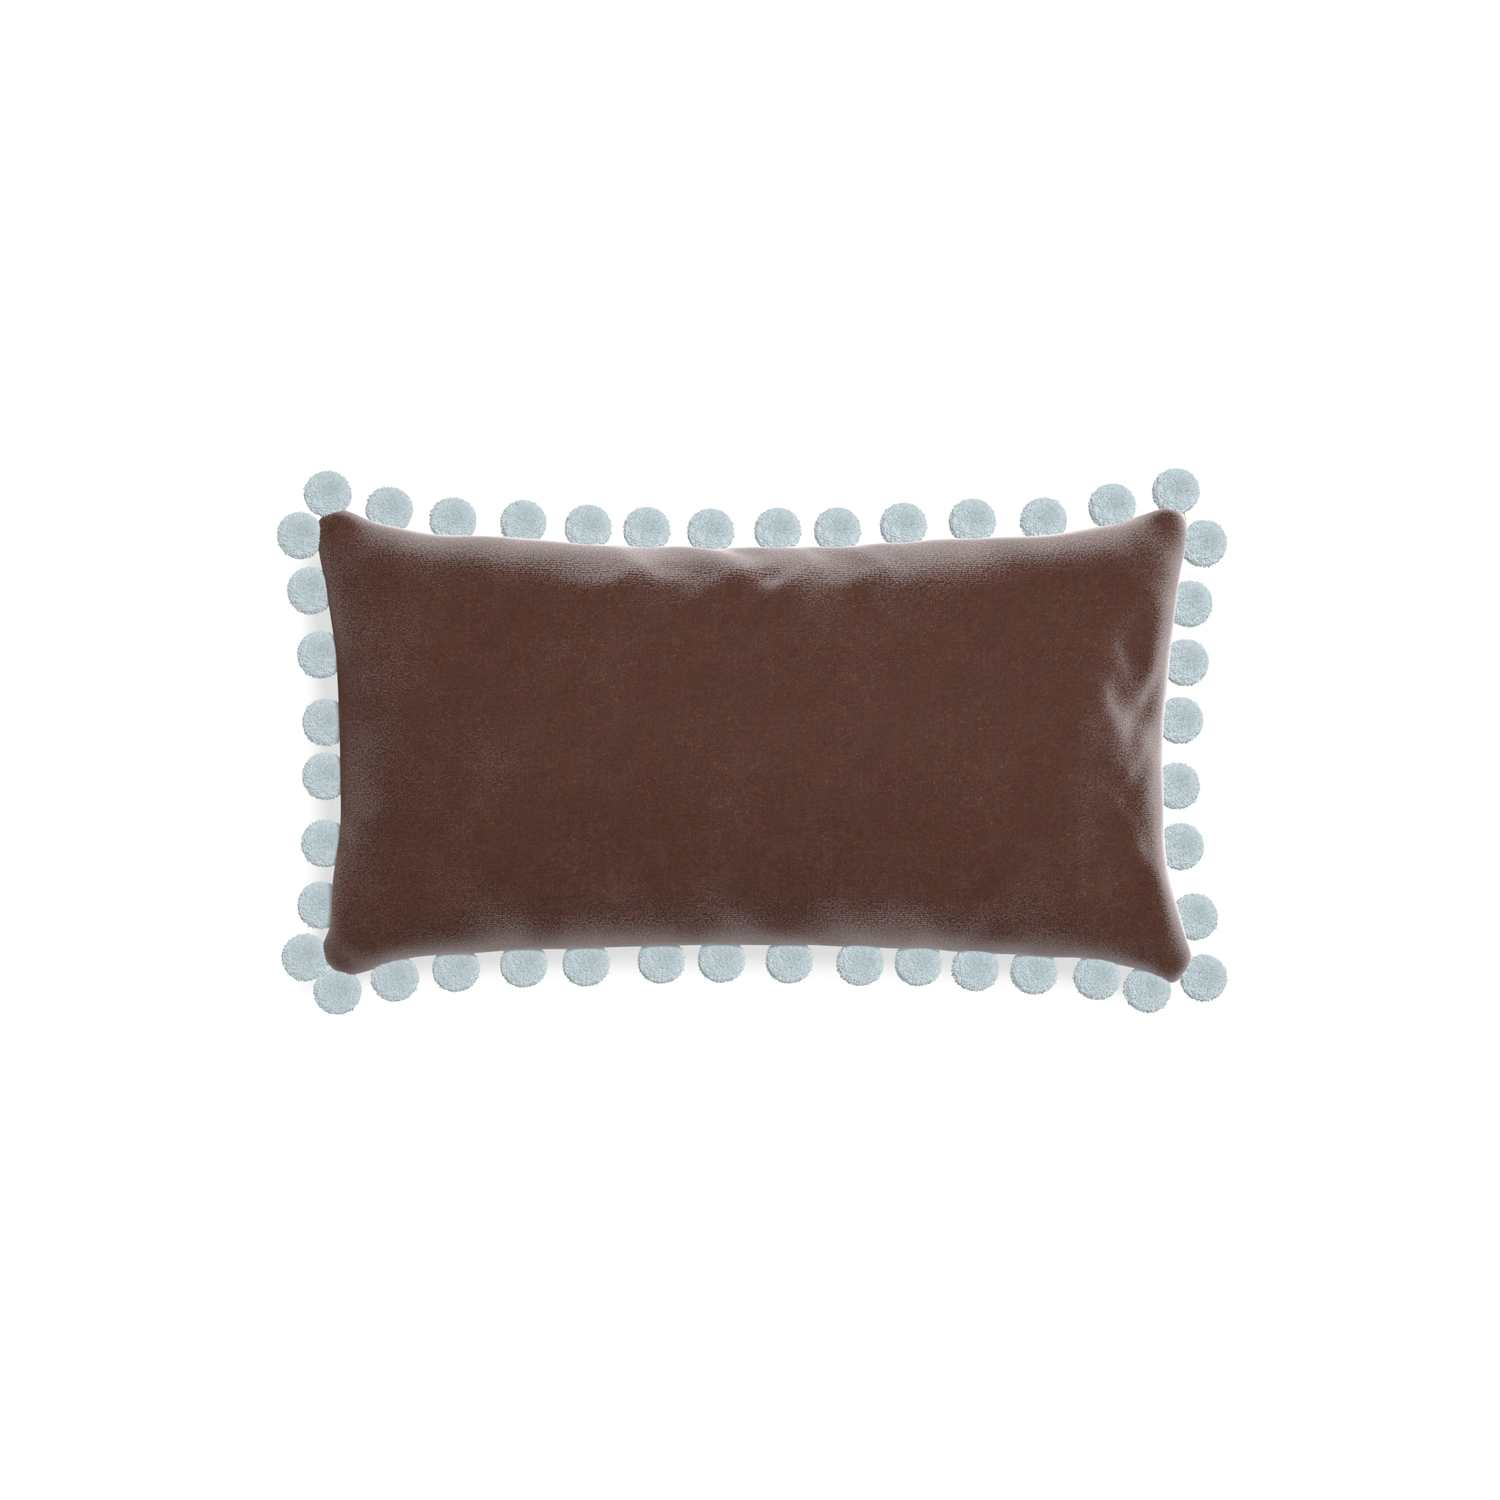 rectangle brown velvet pillow with light blue pom poms